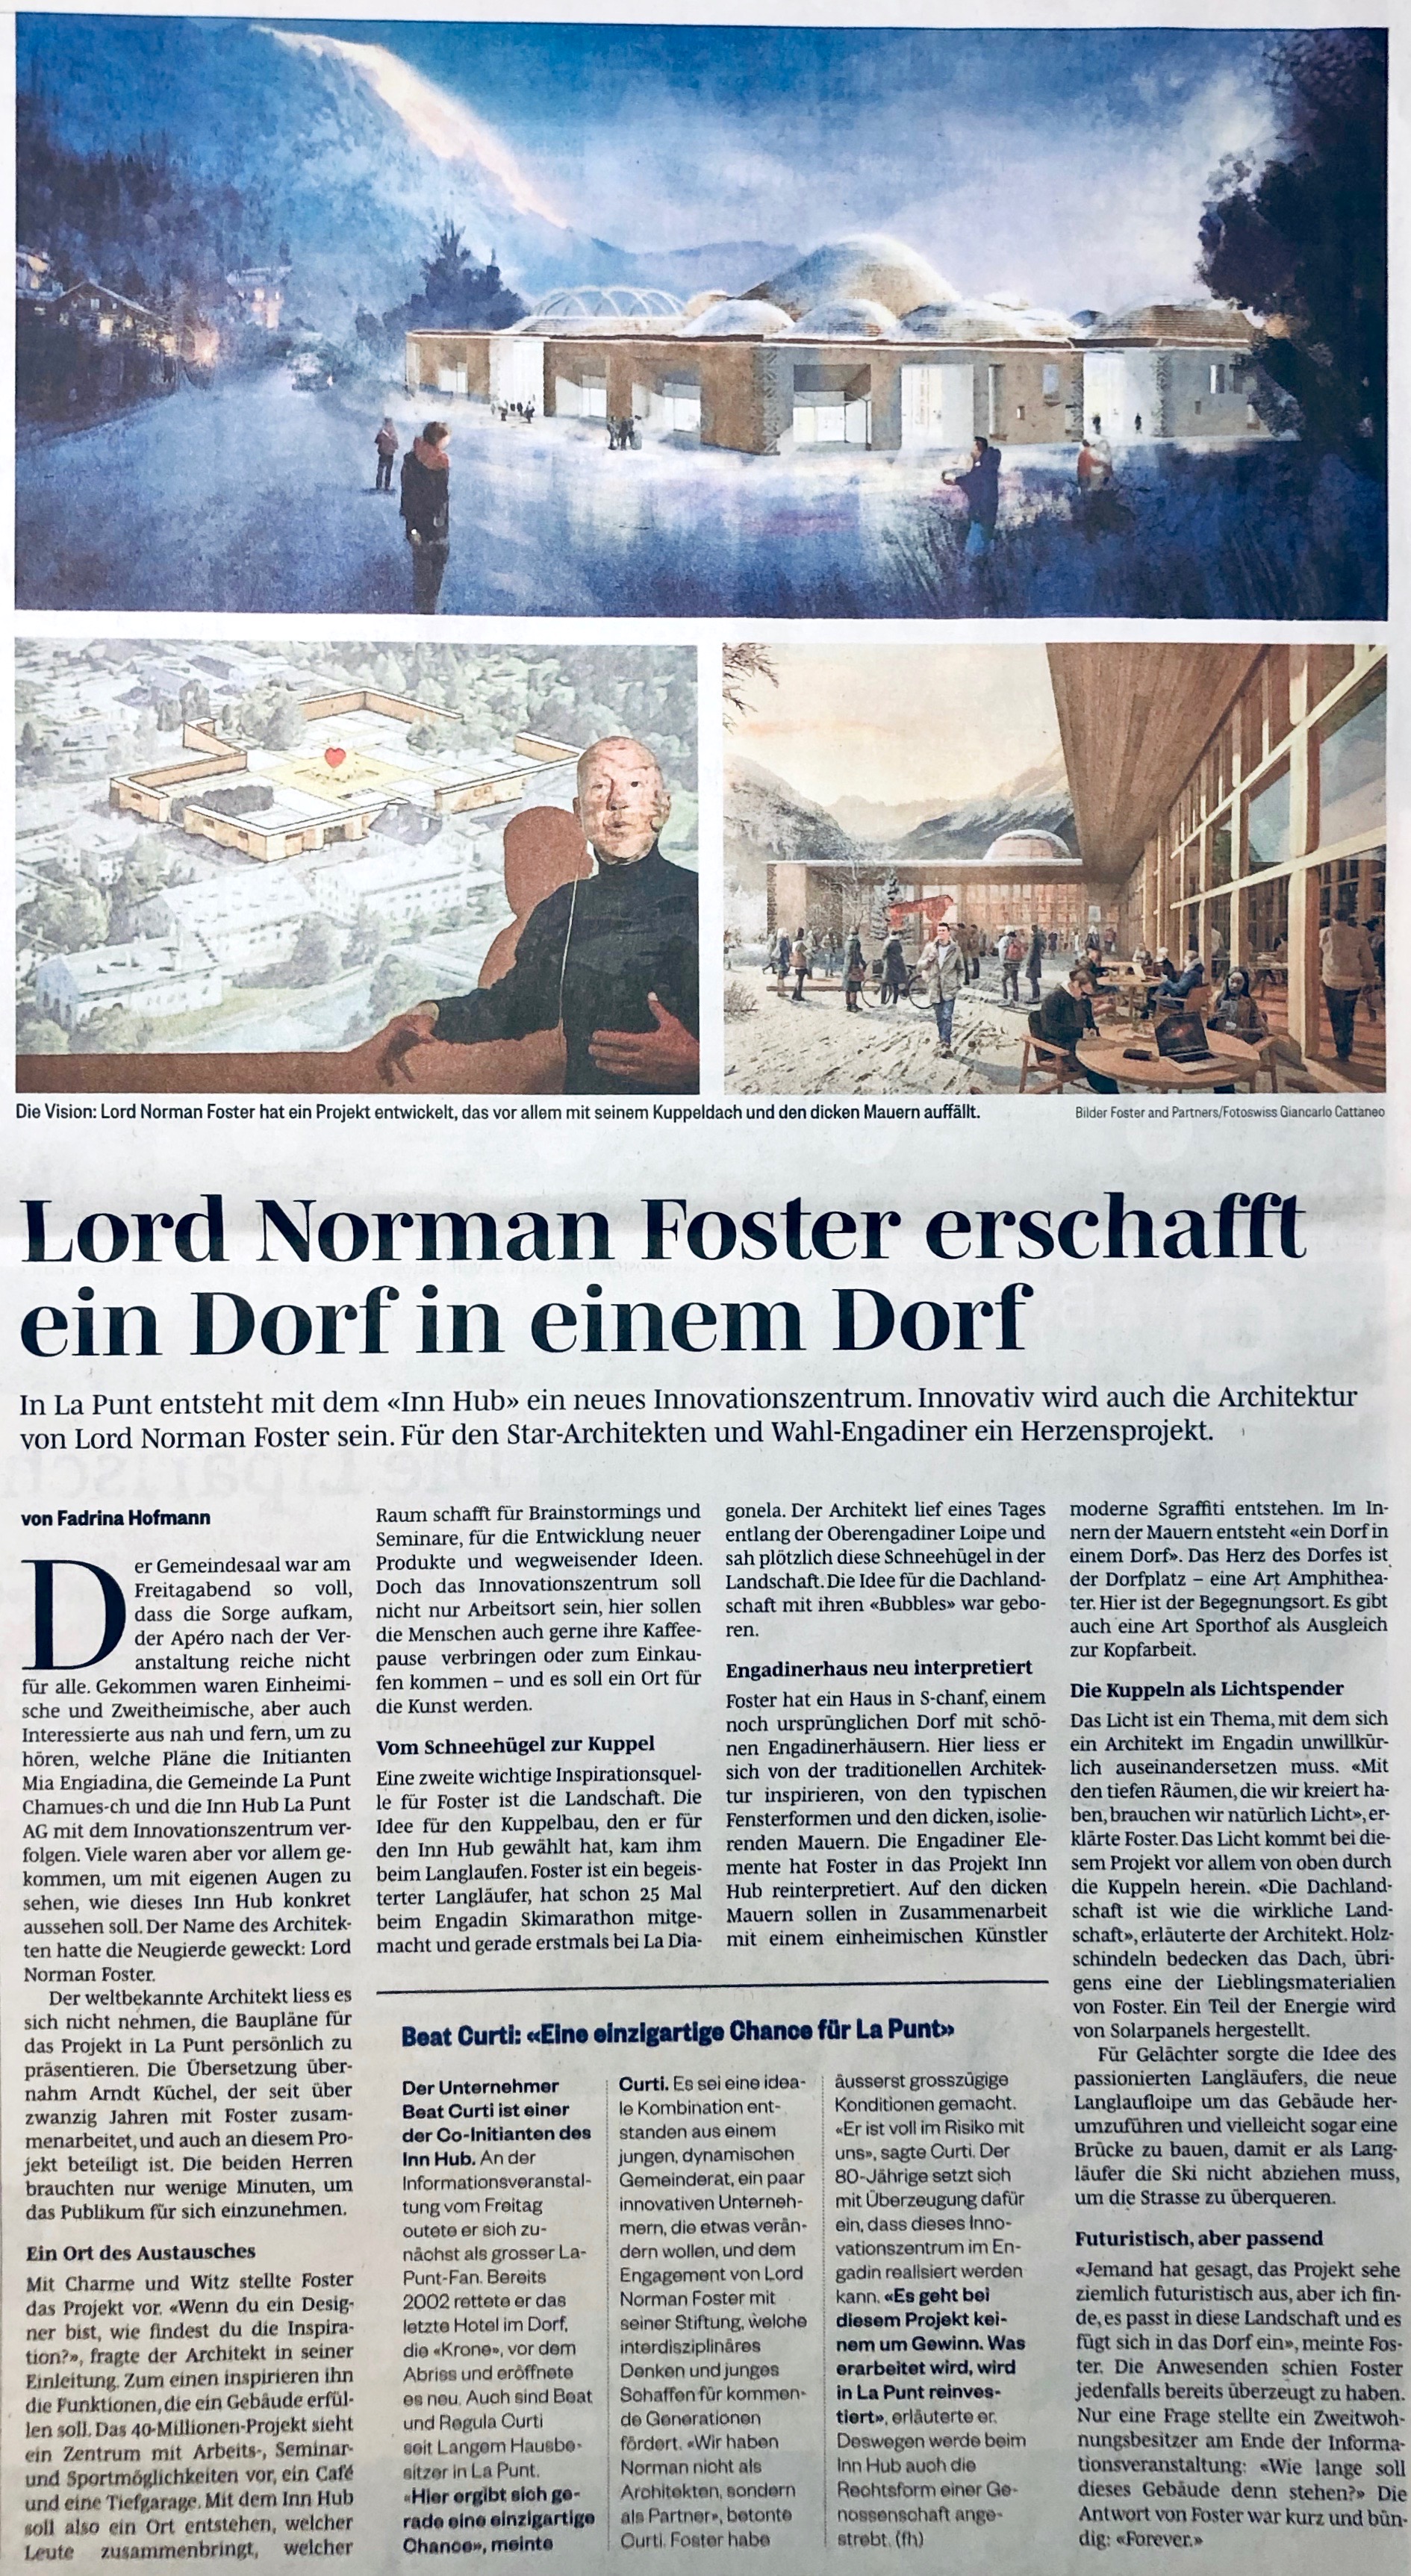 Lord Norman Foster erschafft ein Dorf in einem Dorf